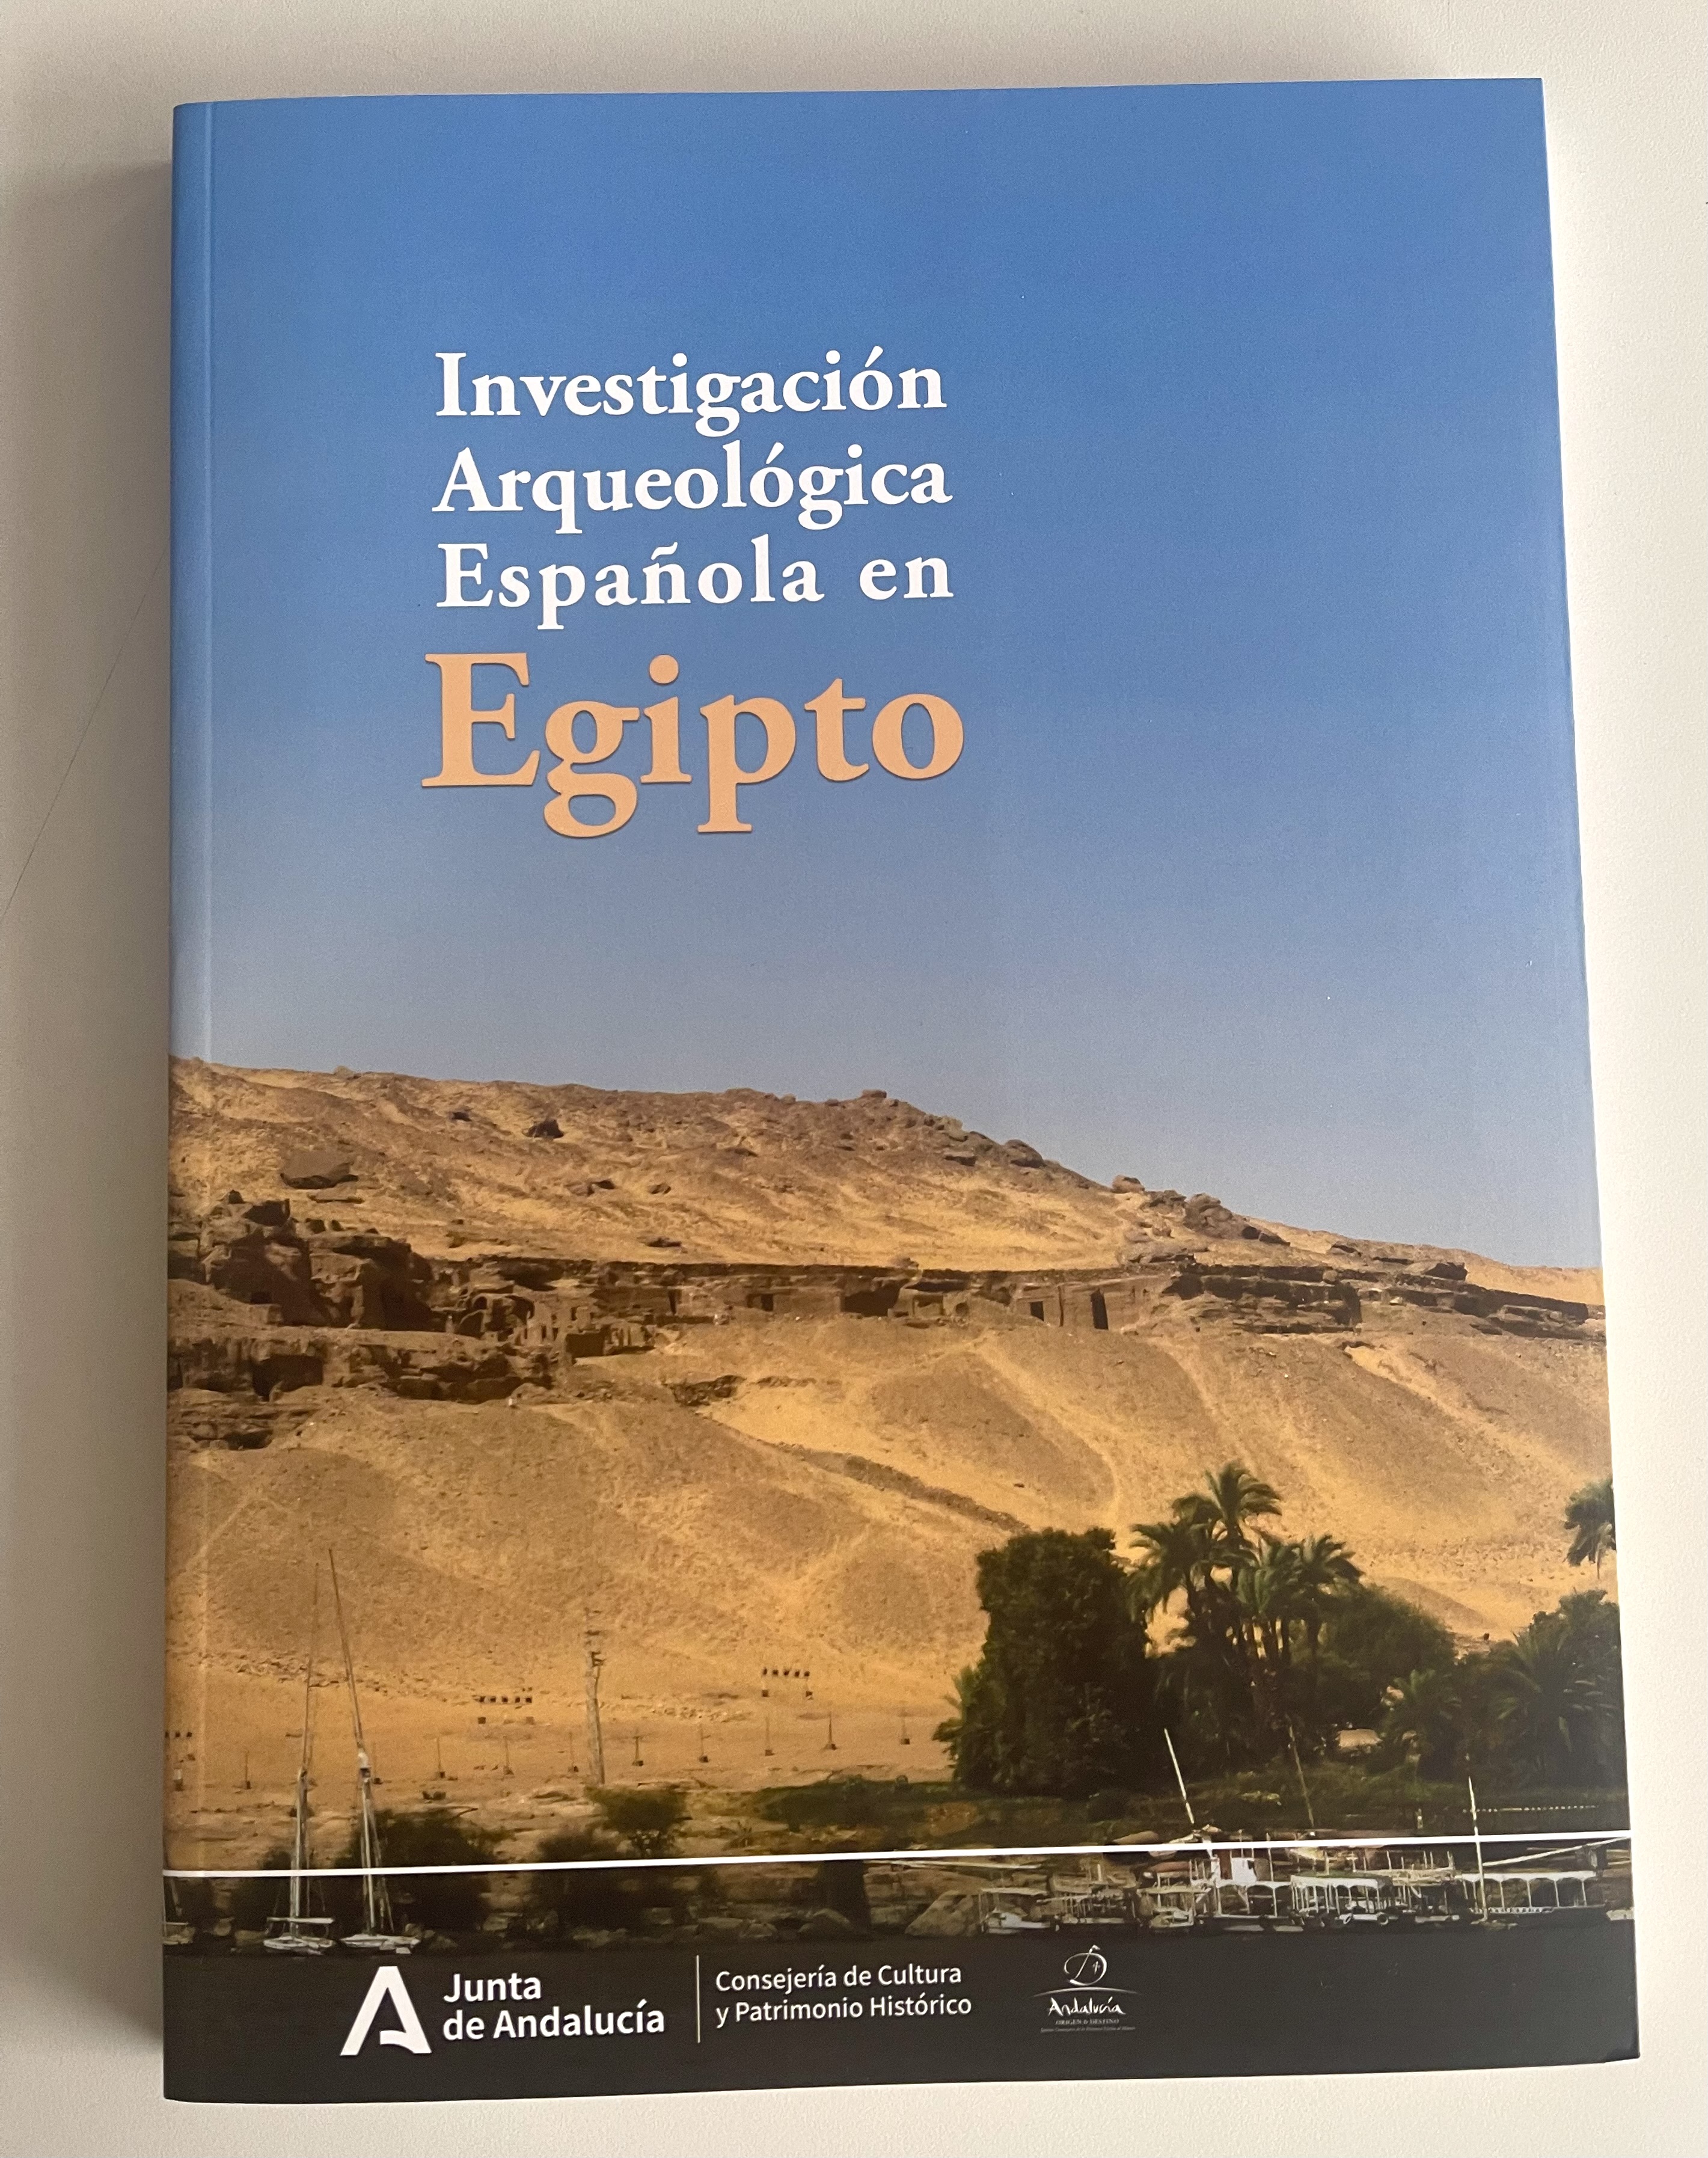 Cubierta de la obra titulada Investigación Española en Egipto